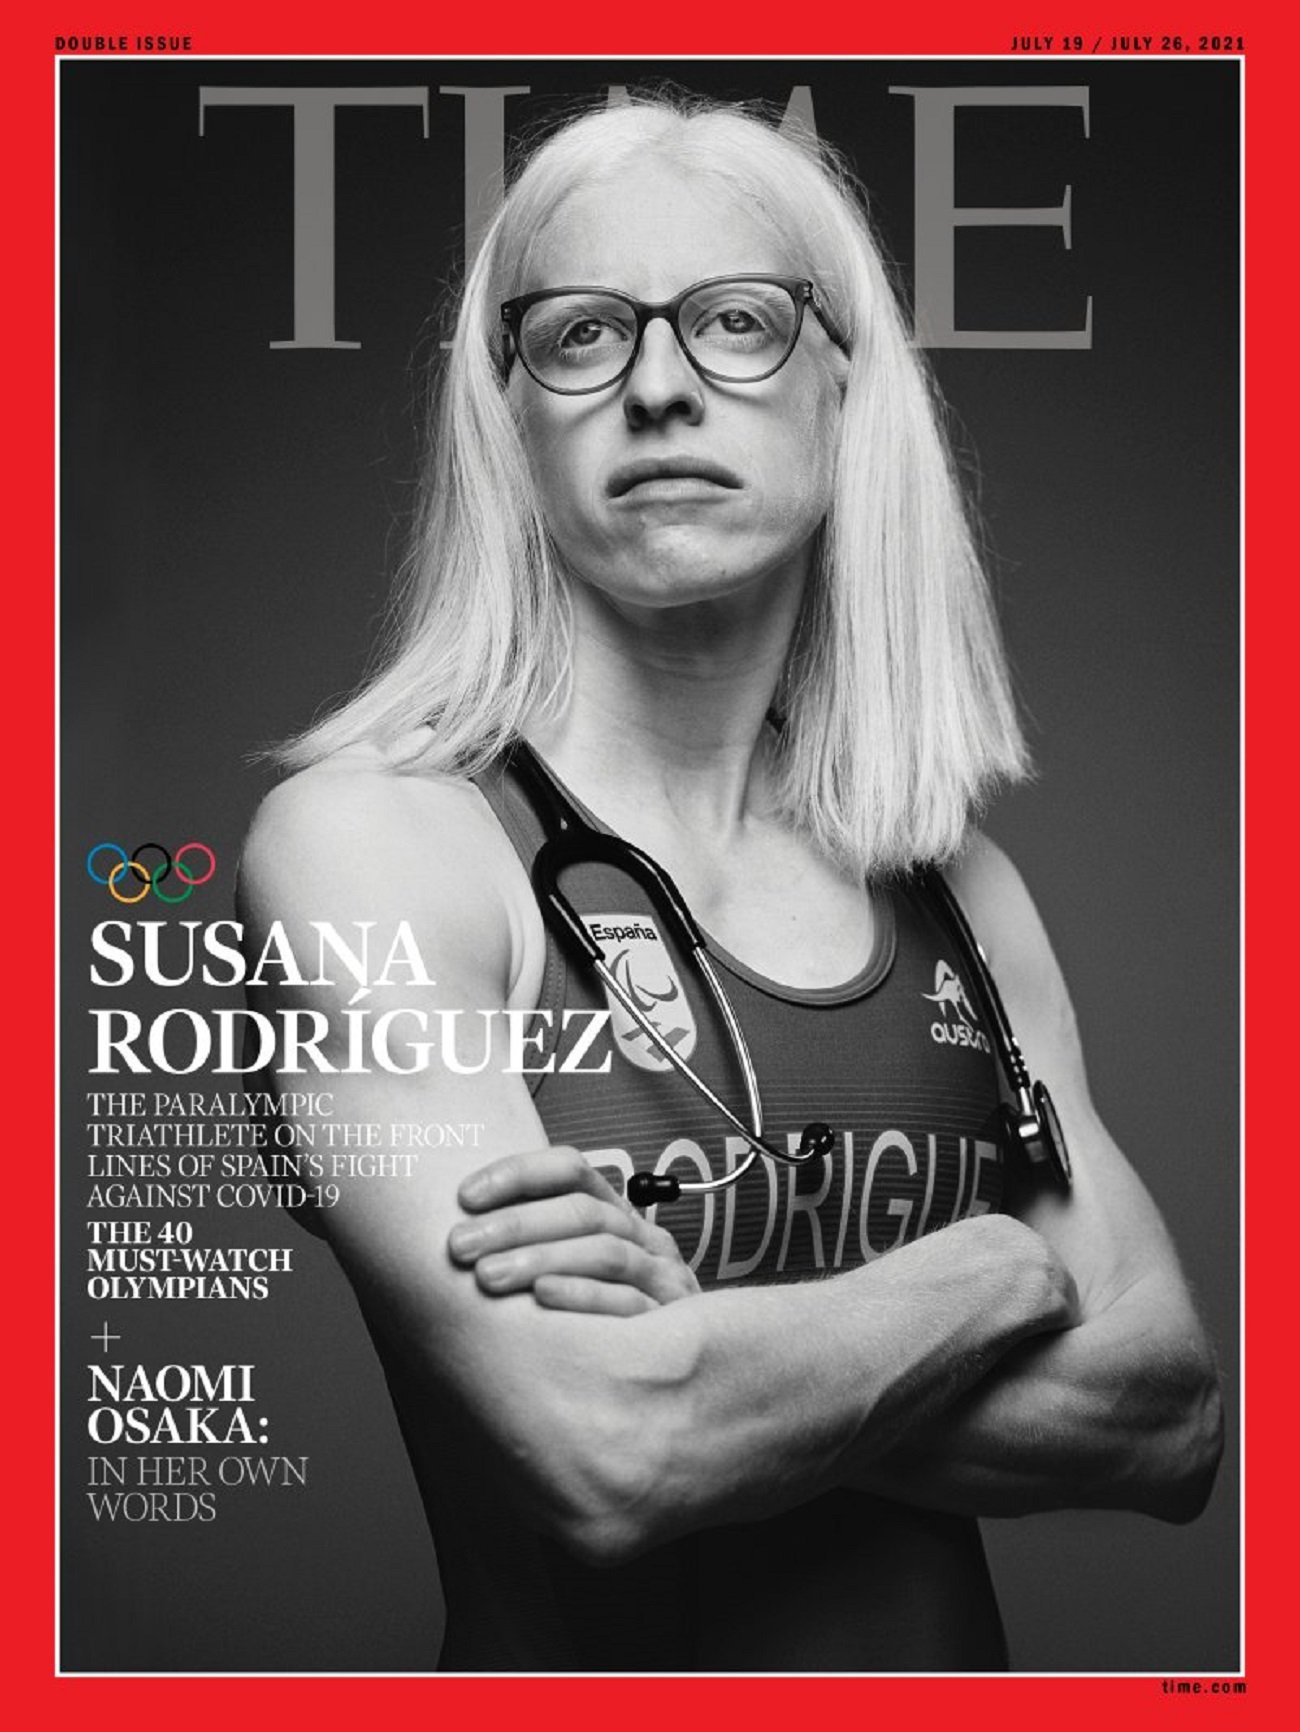 La triatleta paralímpica Susana Rodríguez, portada de la revista 'Time'